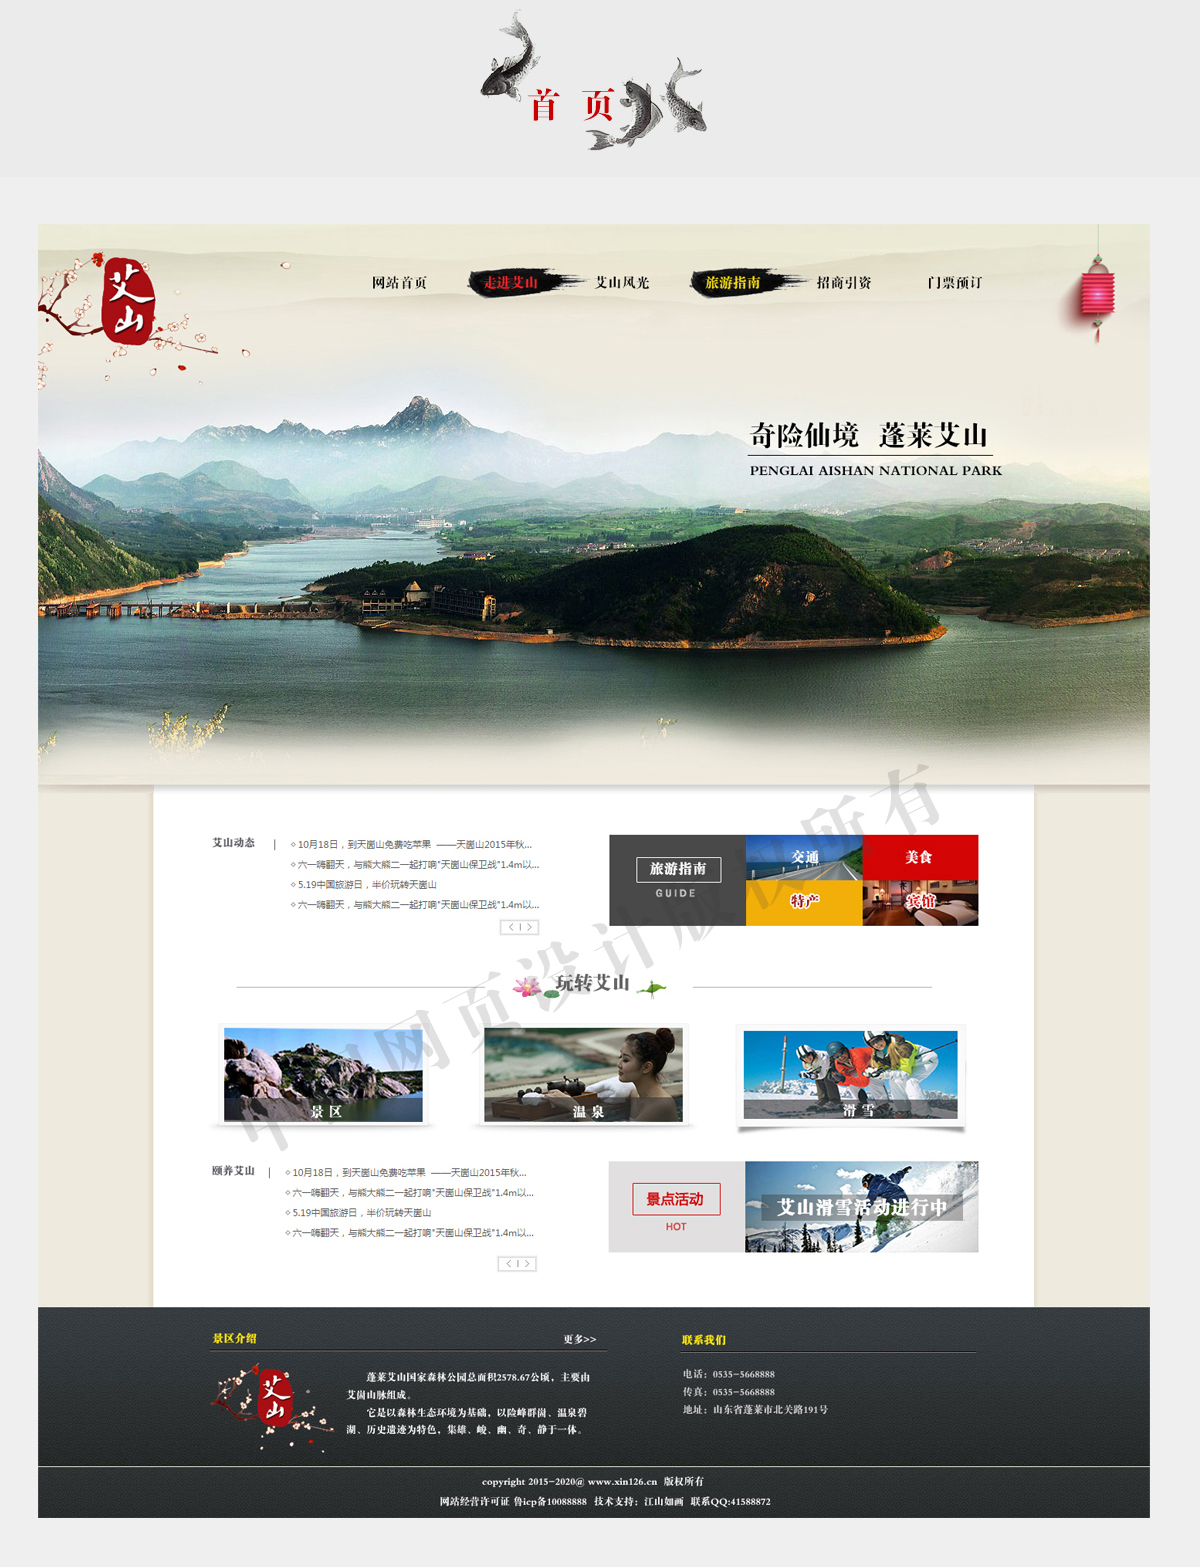 蓬莱艾山国家森林公园-中国风风格旅游网站设计欣赏